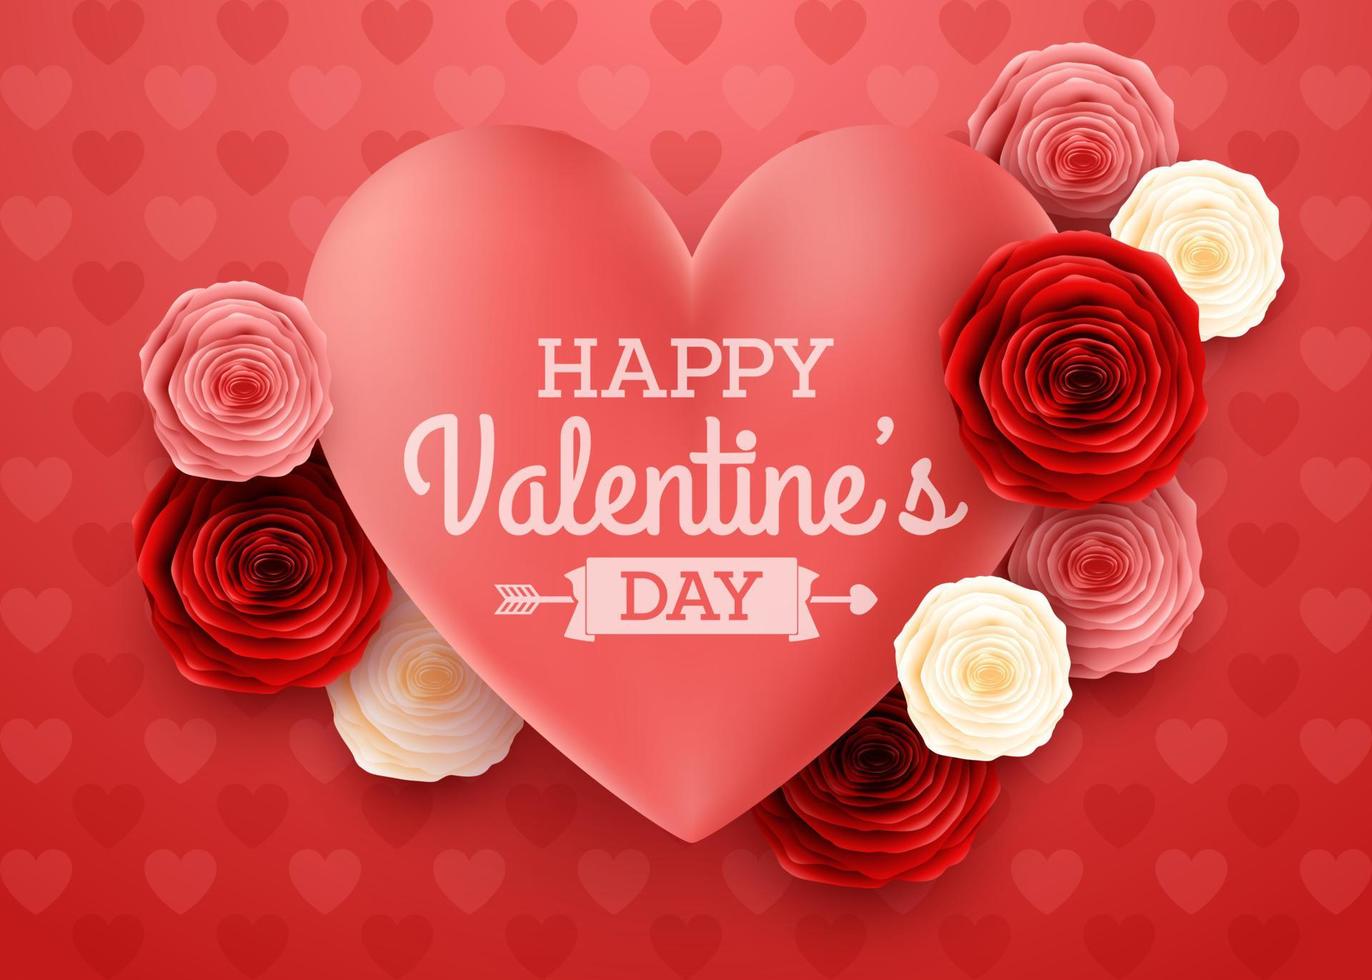 valentijnsdag dag groet kaart met roos bloem en harten achtergrond vector